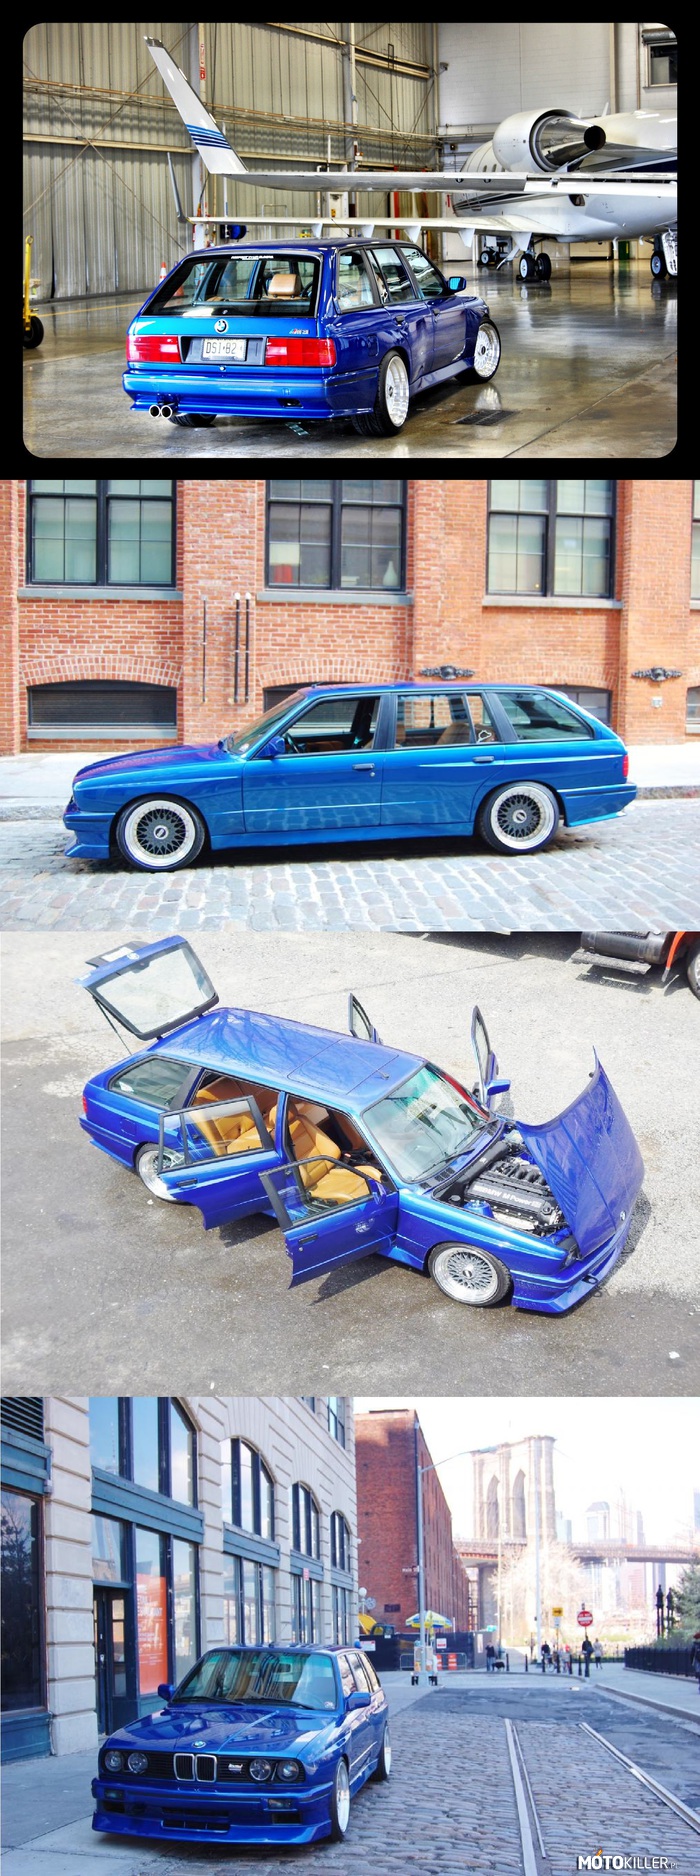 BMW E30 M3 Touring – Prawdziwa perełka po kapitalnym remoncie. 